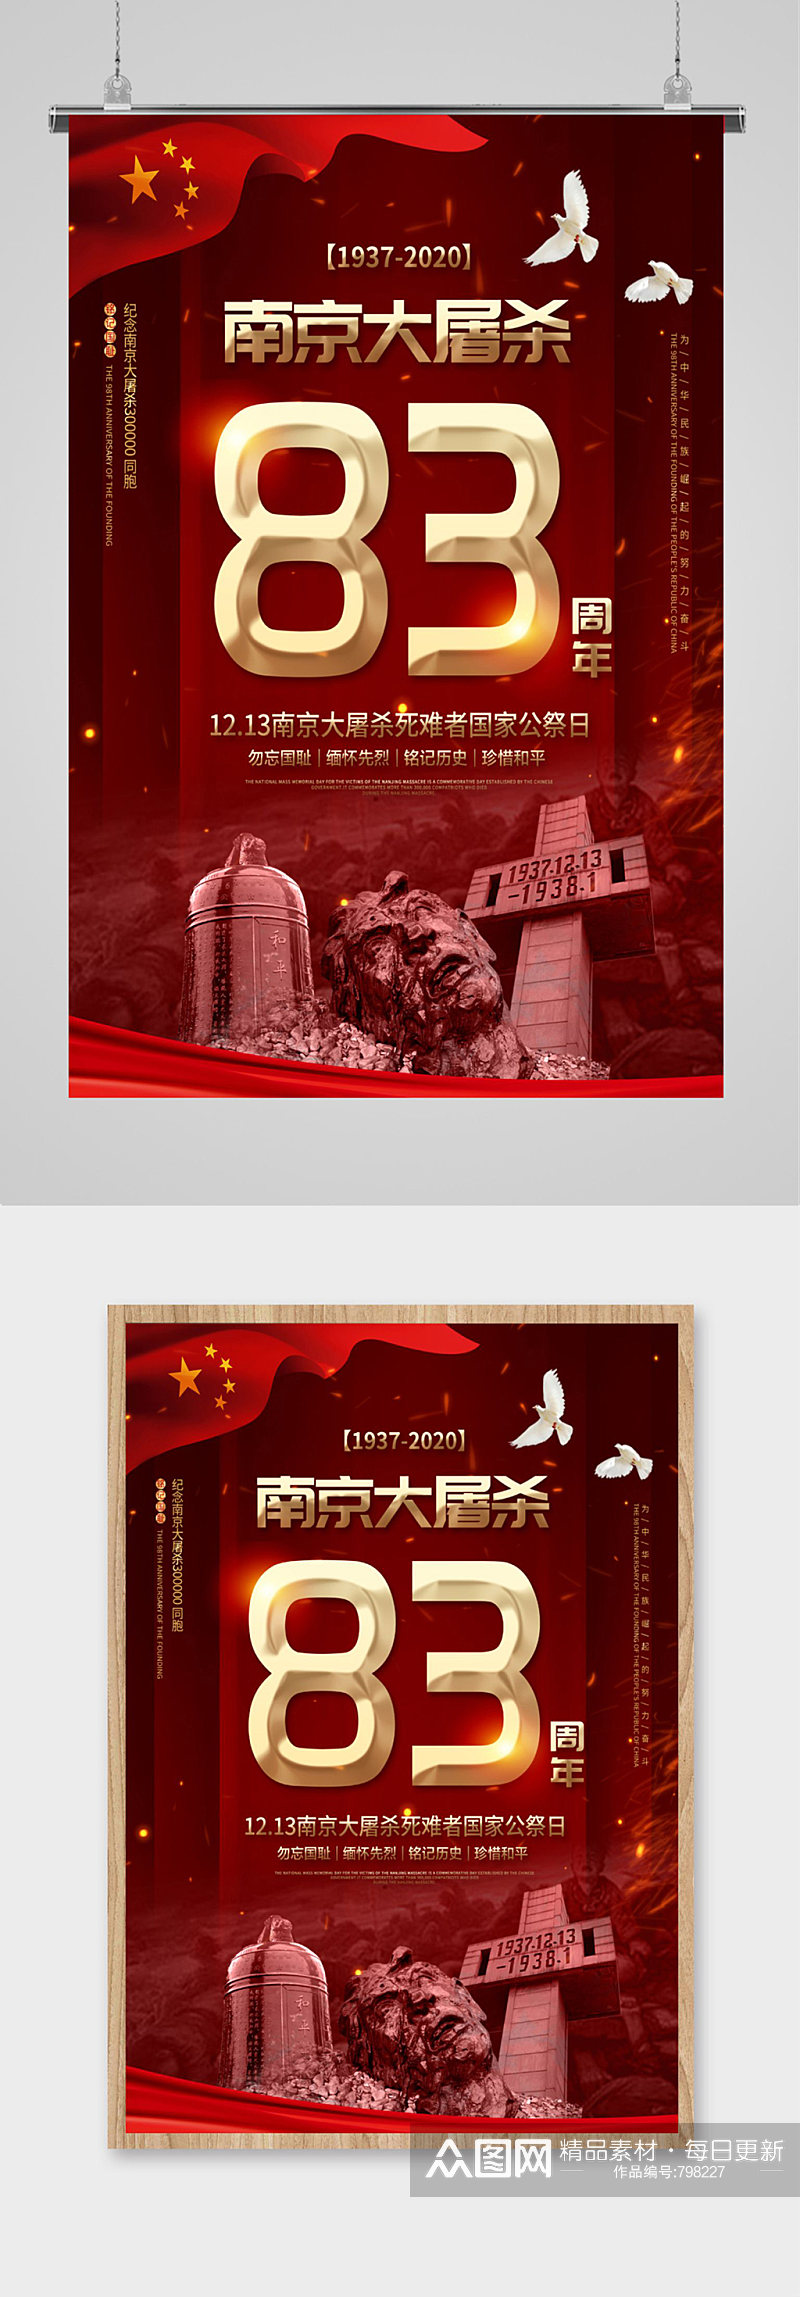 南京大屠杀国家公祭日纪念日海报素材